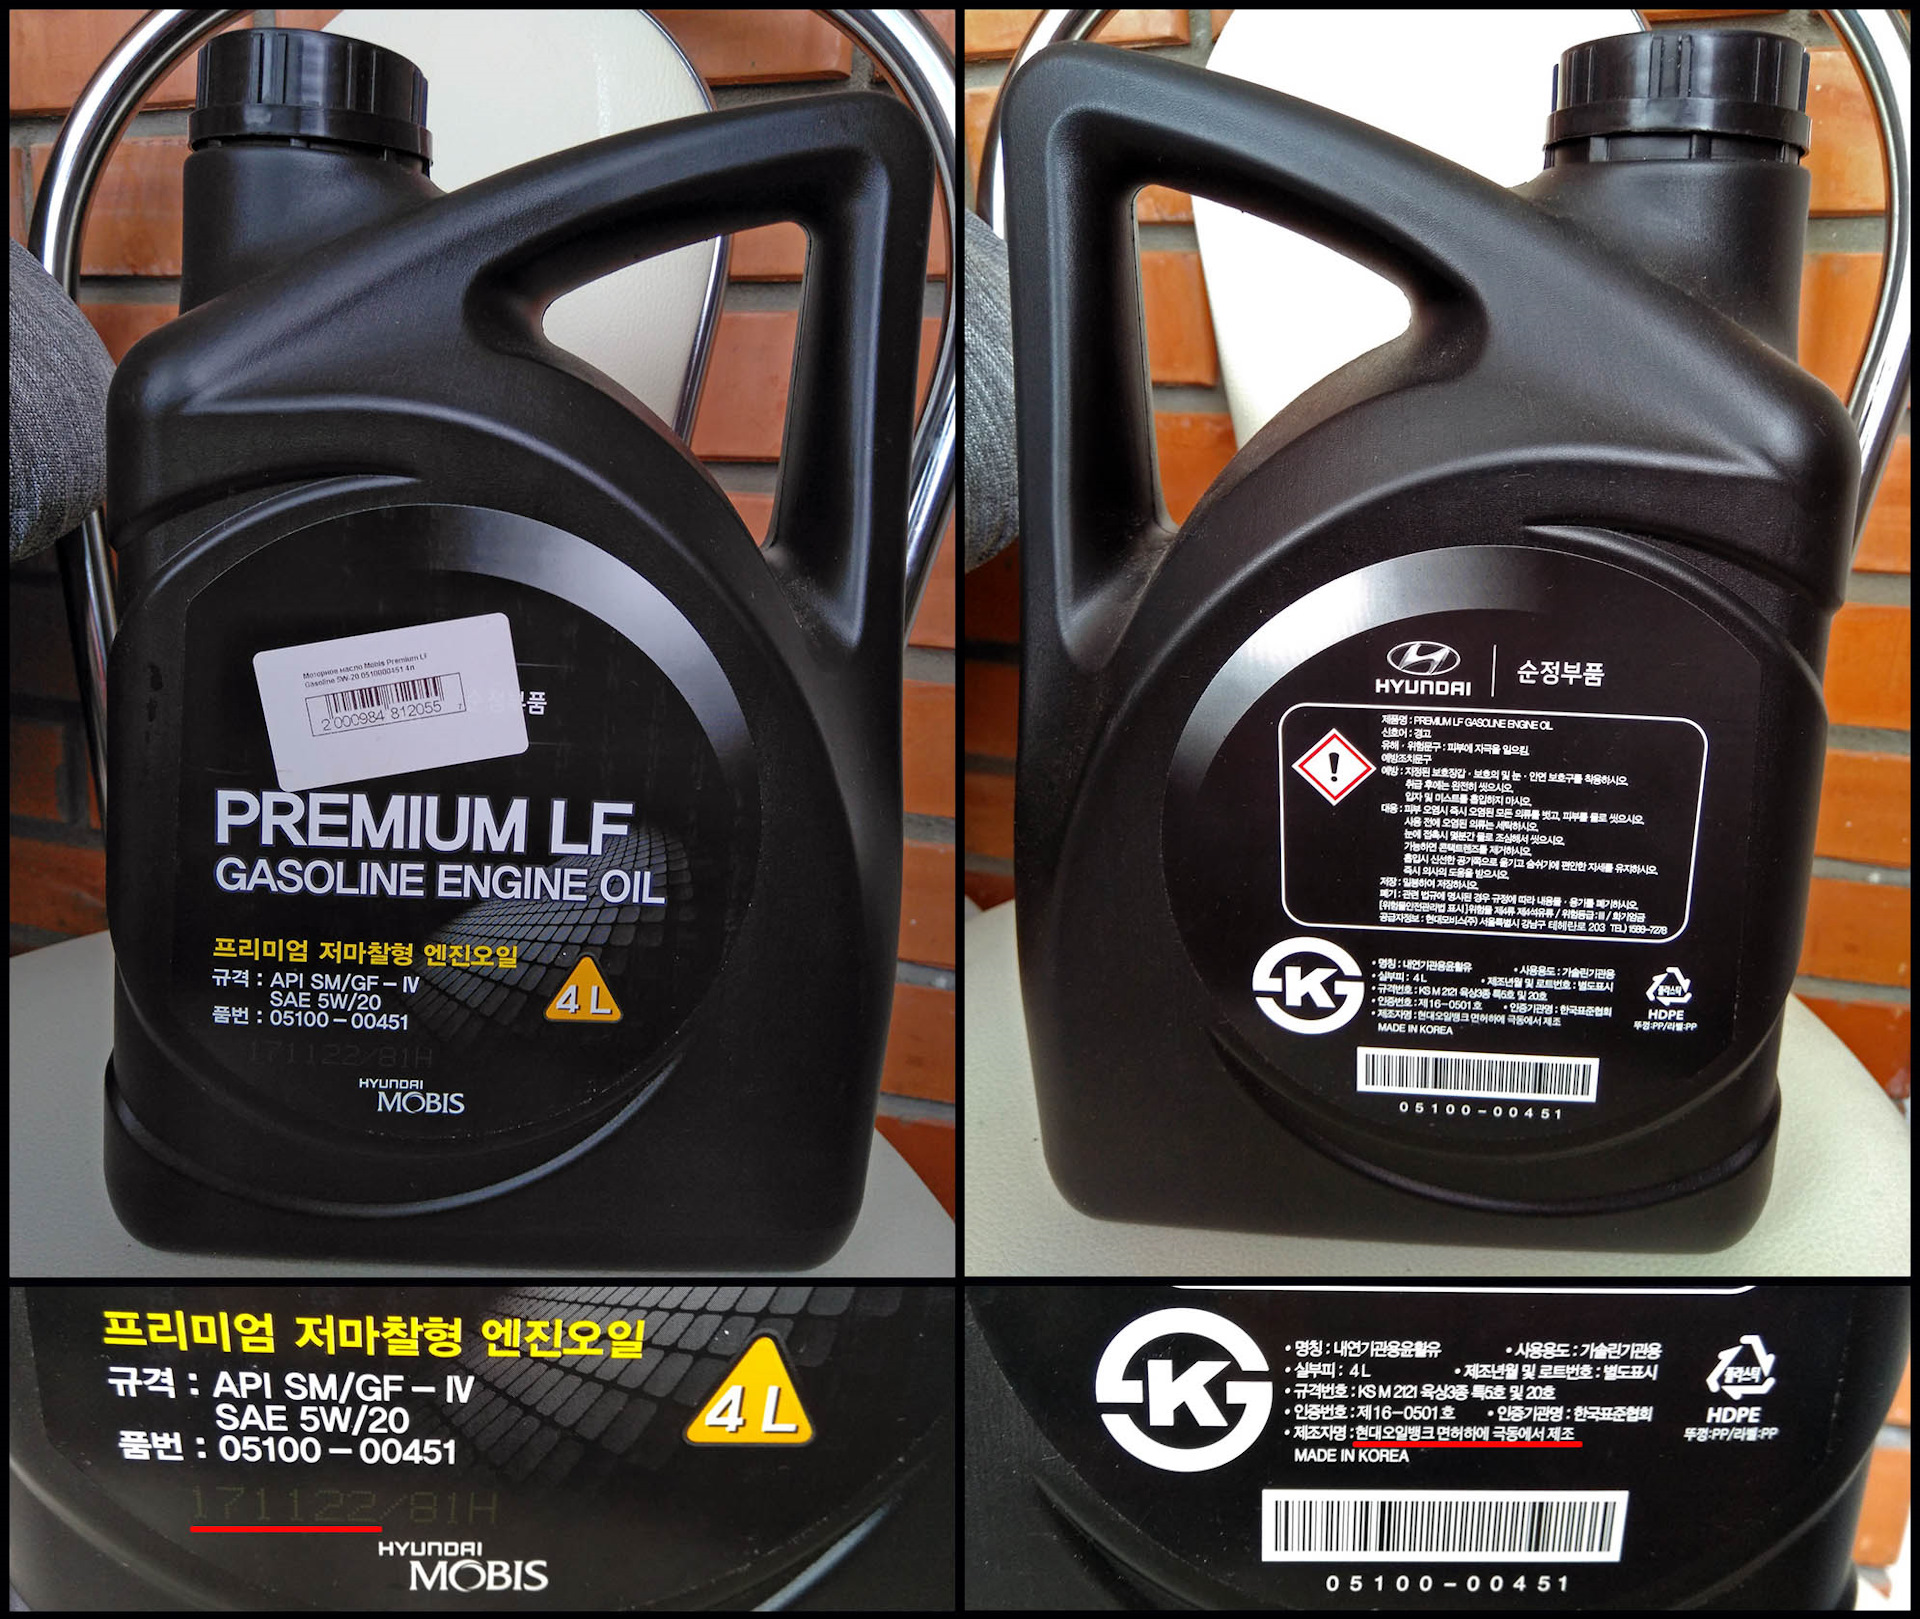 Масло hyundai как проверить. Premium LF gasoline (5w40). Premium LF gasoline 5w-20. Масло Hyundai mobis Premium LF gasoline 5w20 1l (Корея). Premium LF gasoline engine Oil 5w20 оригинал.